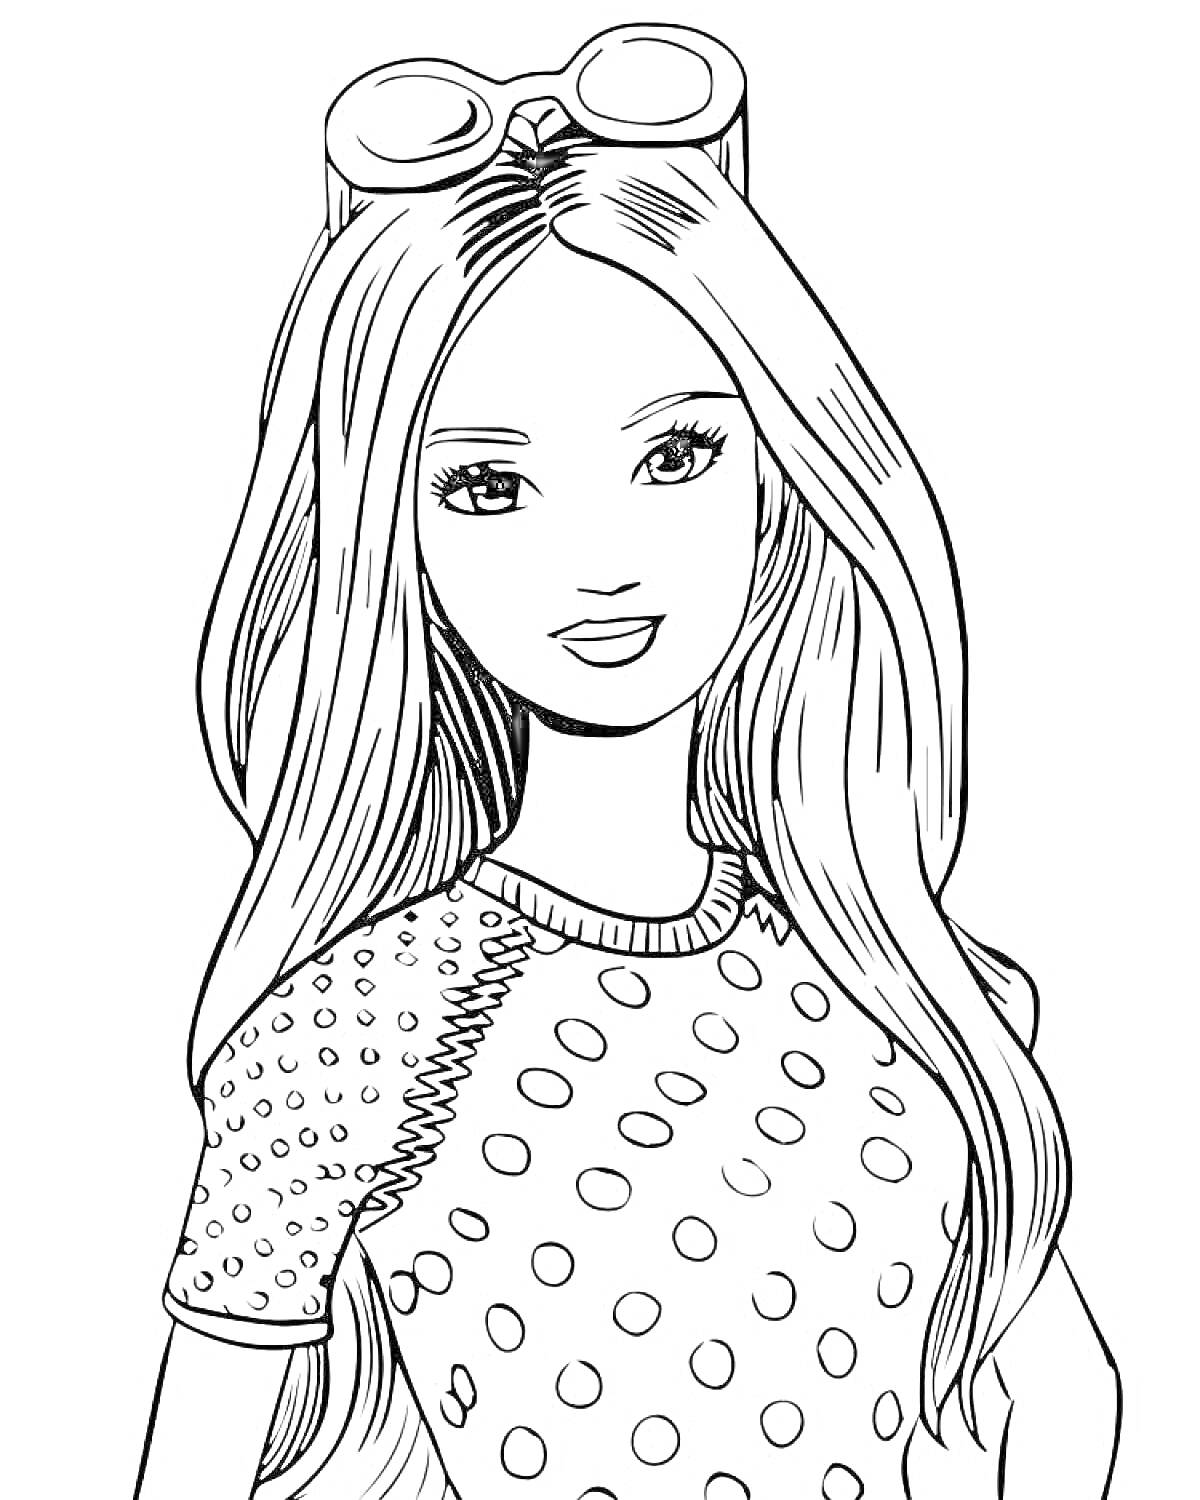 Раскраска Девушка с длинными волосами в платье в горошек и солнечными очками на голове